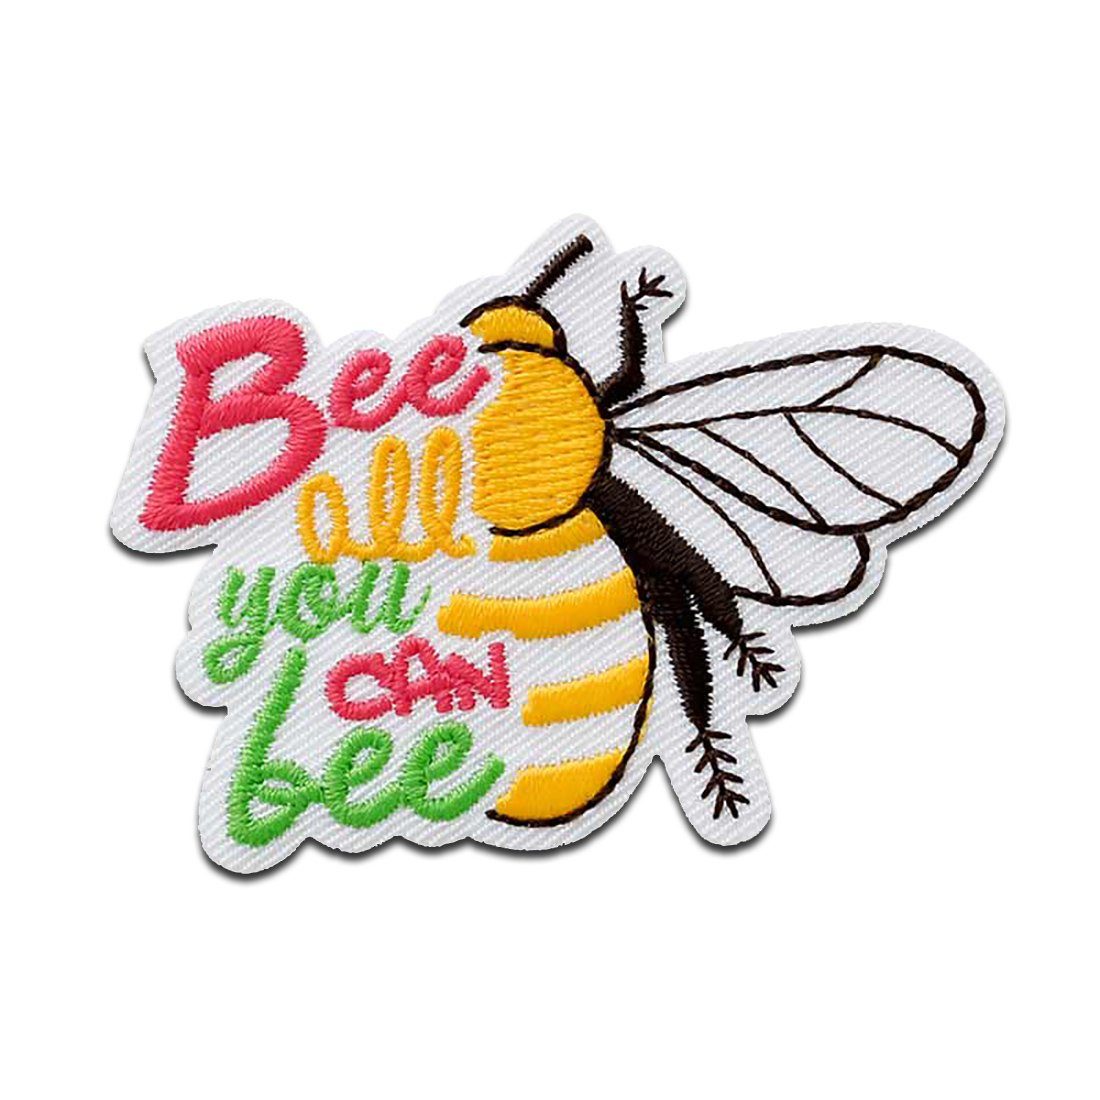 Mono-Quick Aufnäher Bügelbild, Aufbügler, Applikationen, Patches, Flicken,  zum aufbügeln, rPES, NY, PES, Recycl-Patch Bee all you can - Größe: 4 x 5,5  cm